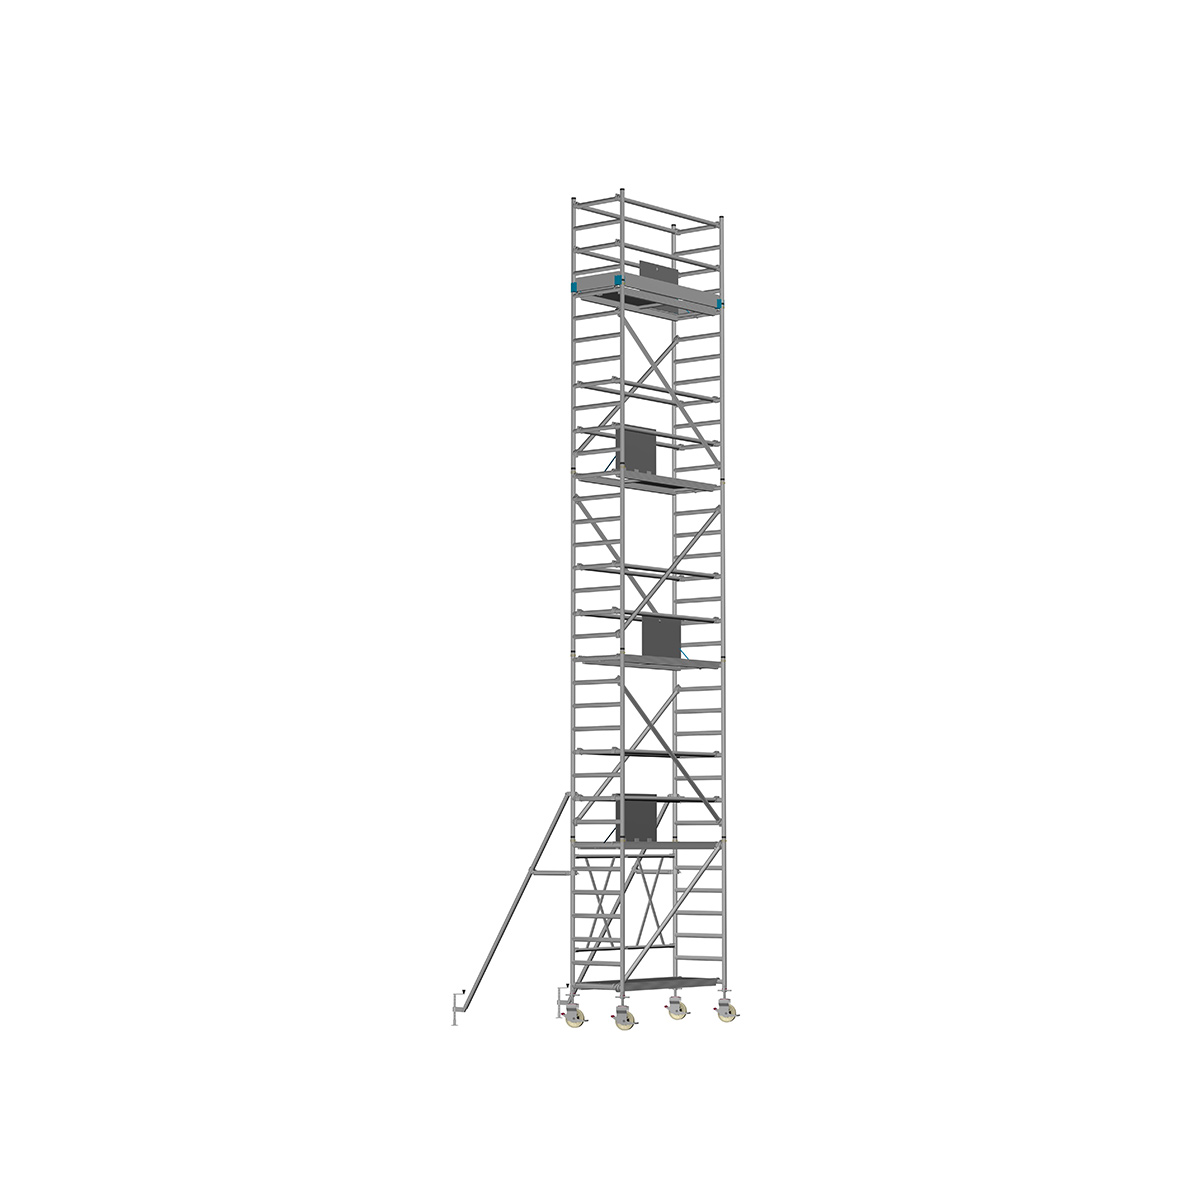 Chiemsee 1 PROFI - Länge: 1,83 m - Breite: 0,74 m, Standhöhe 1,00 m